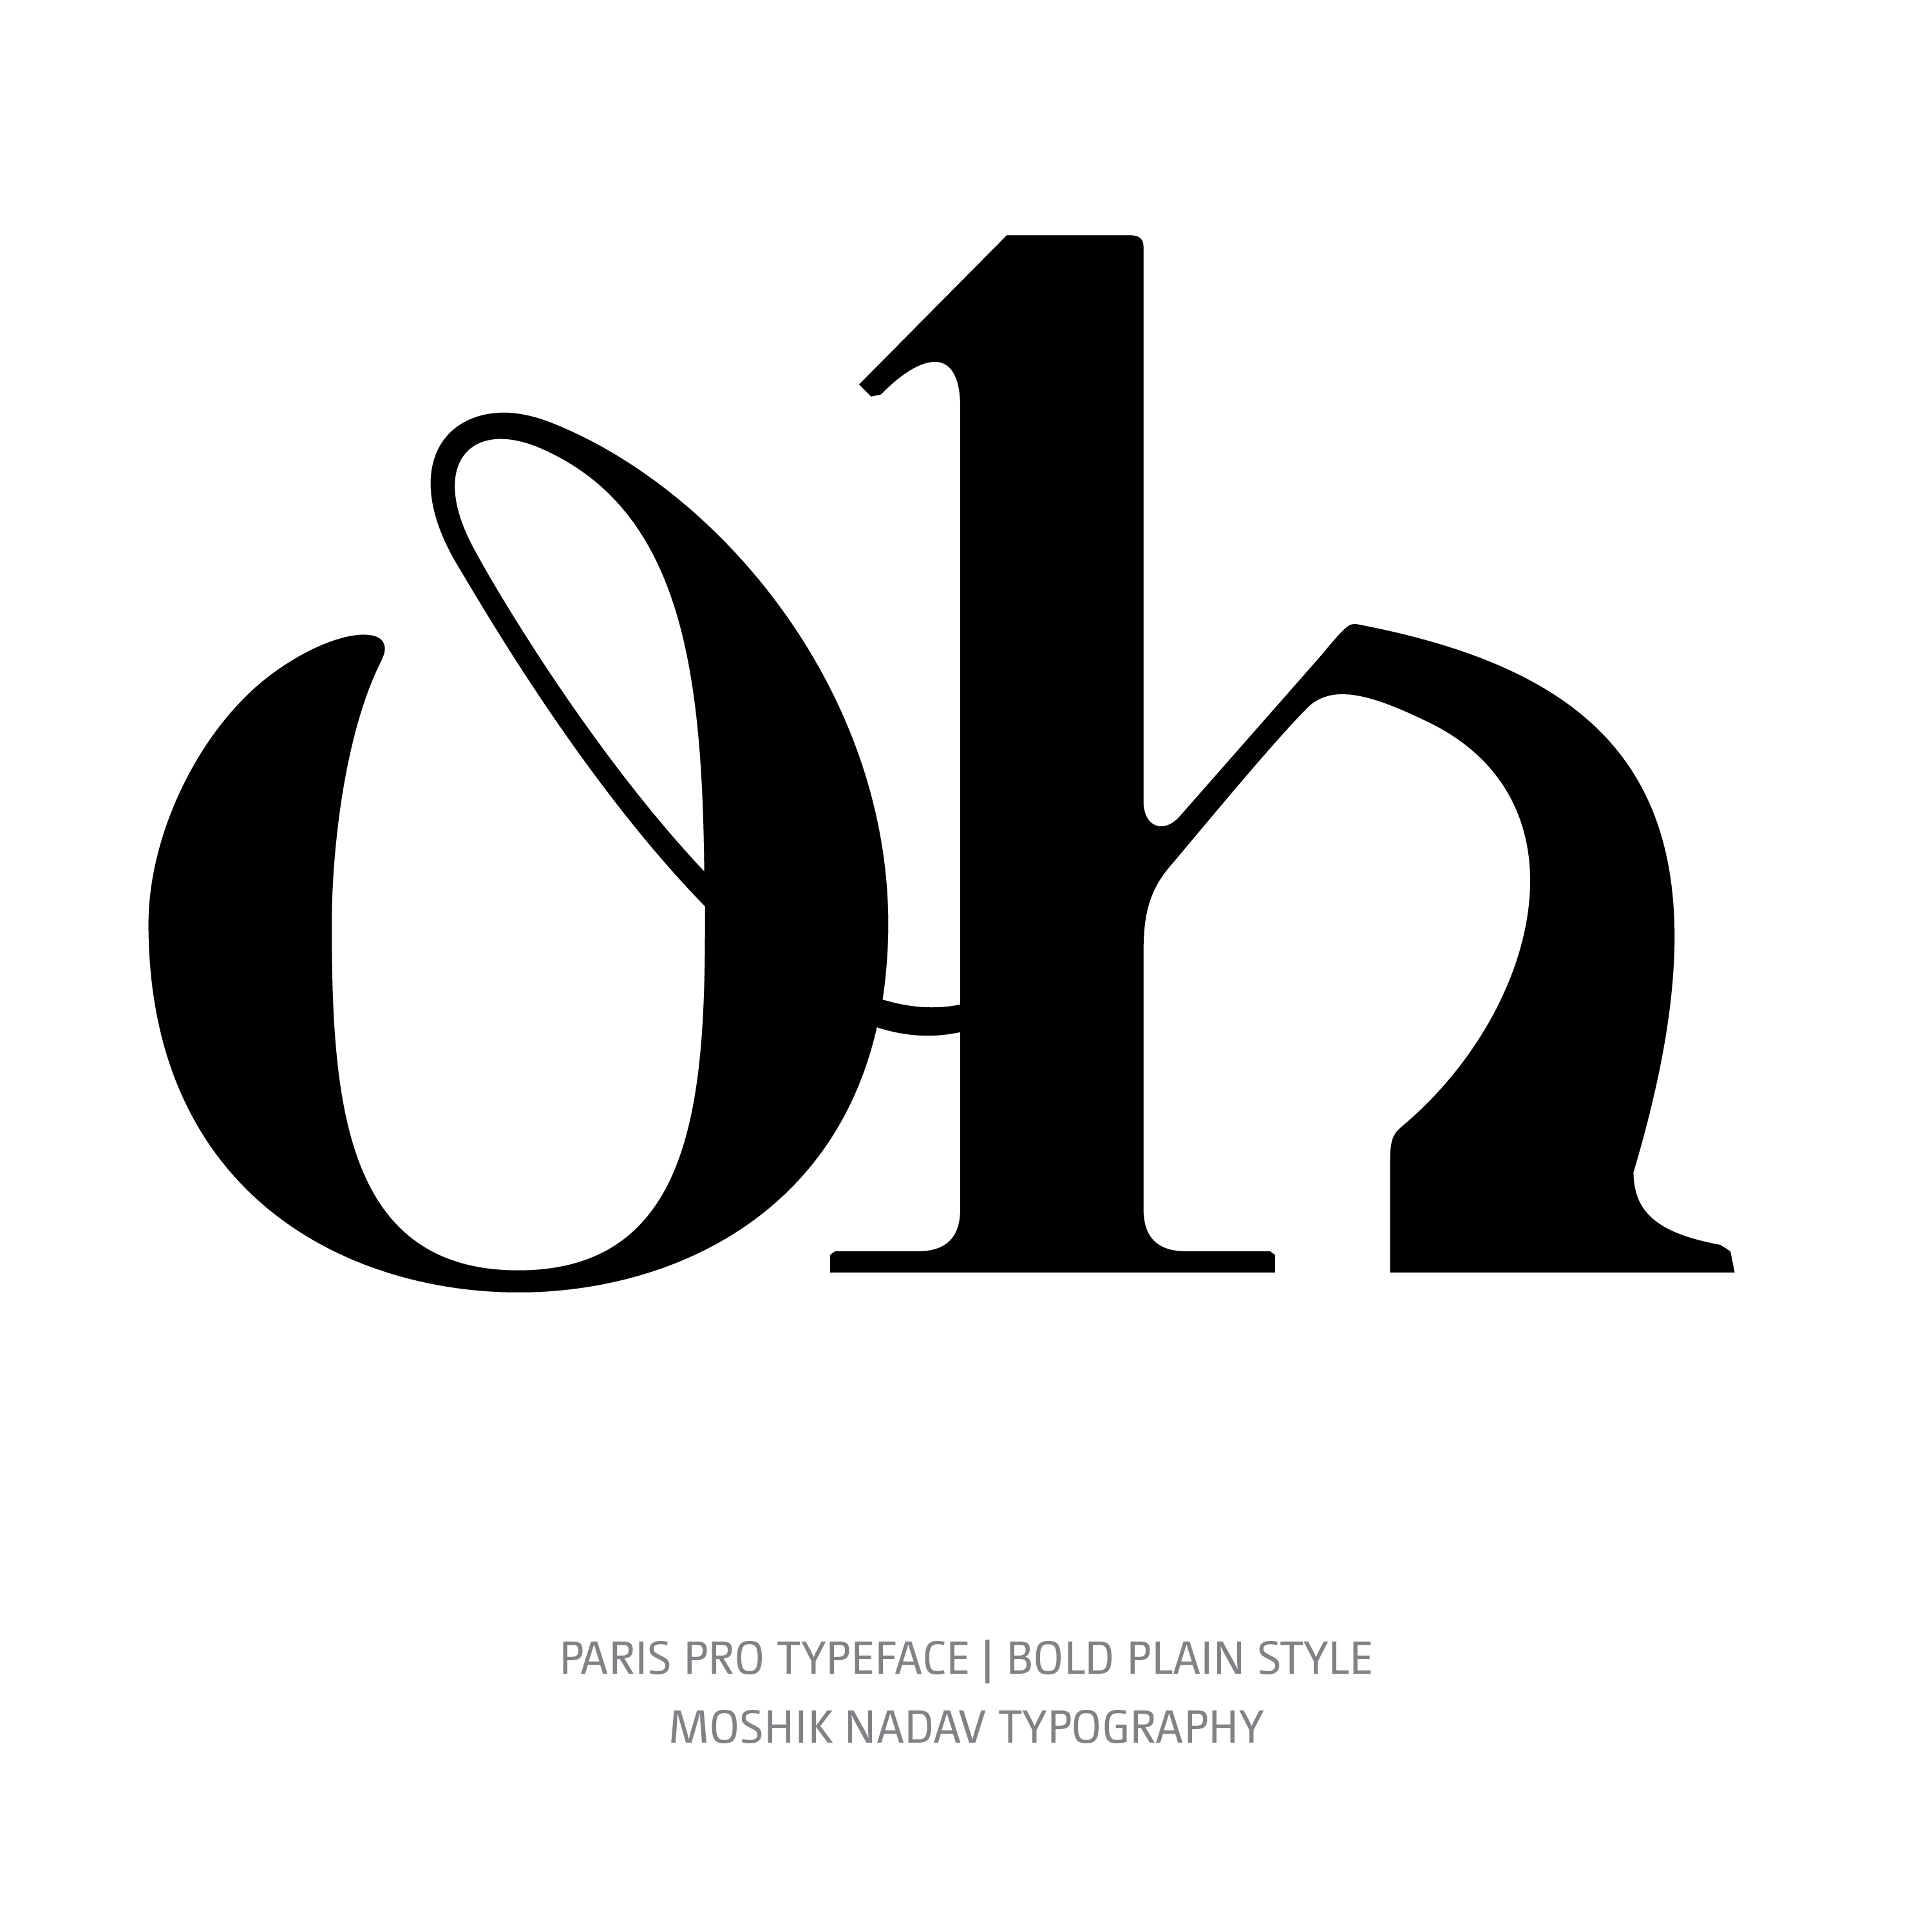 Paris Pro Typeface Bold oh ligature